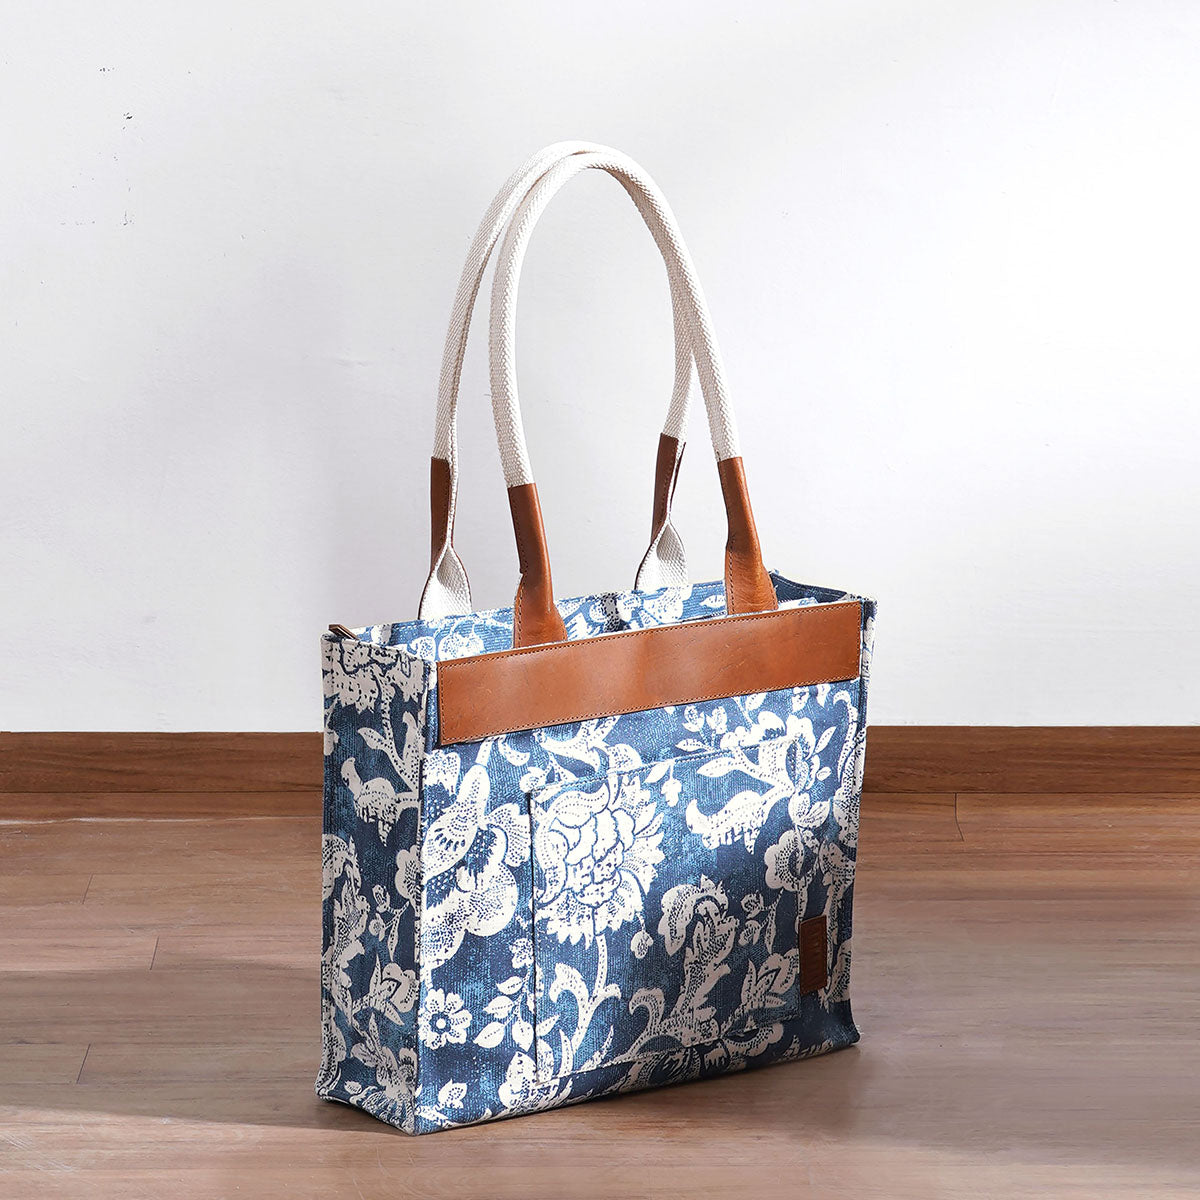 Buy Mona B Grey Large Tote Bag at Best Price @ Tata CLiQ